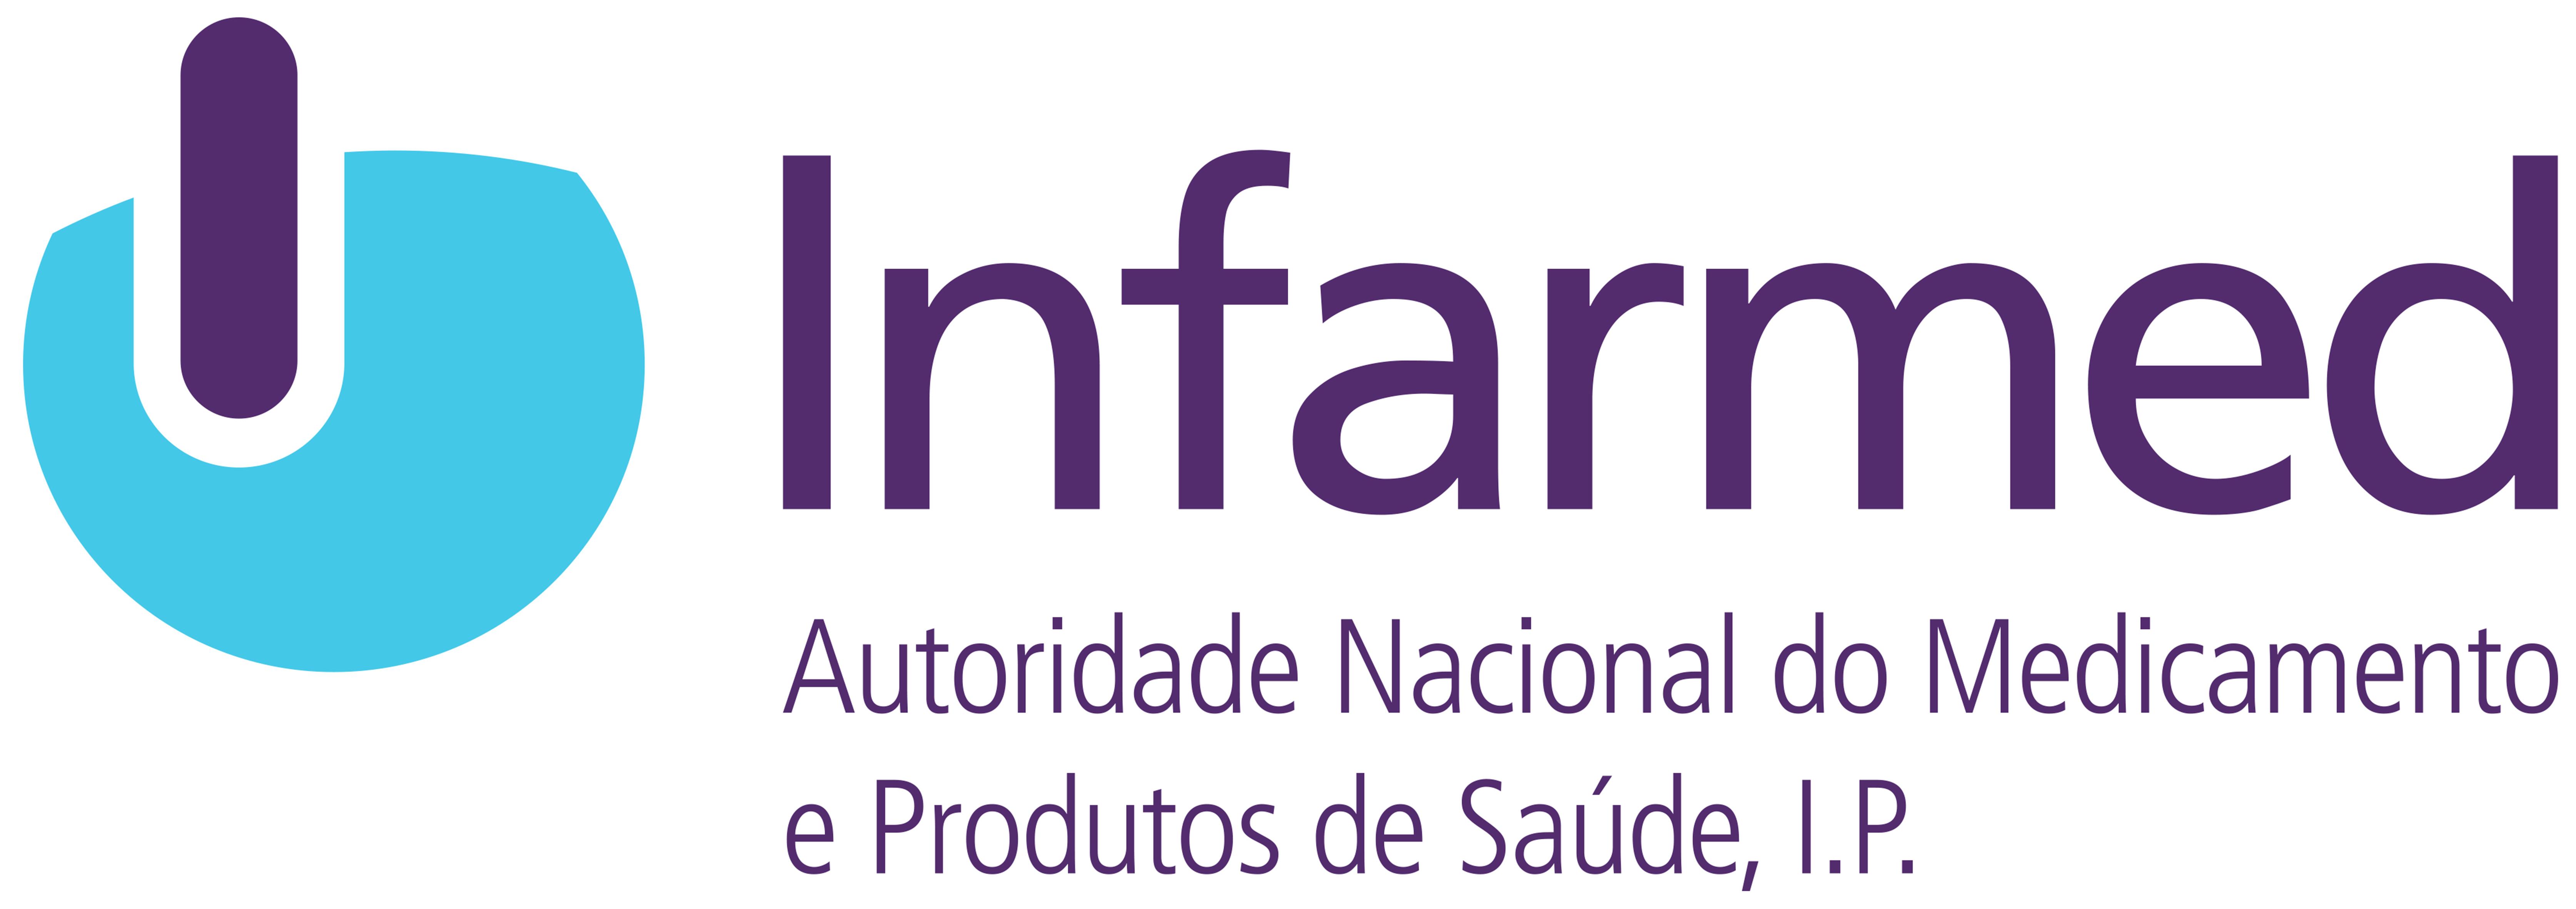 Logotipo Realizar pesquisa online de farmácias - ePortugal.gov.pt